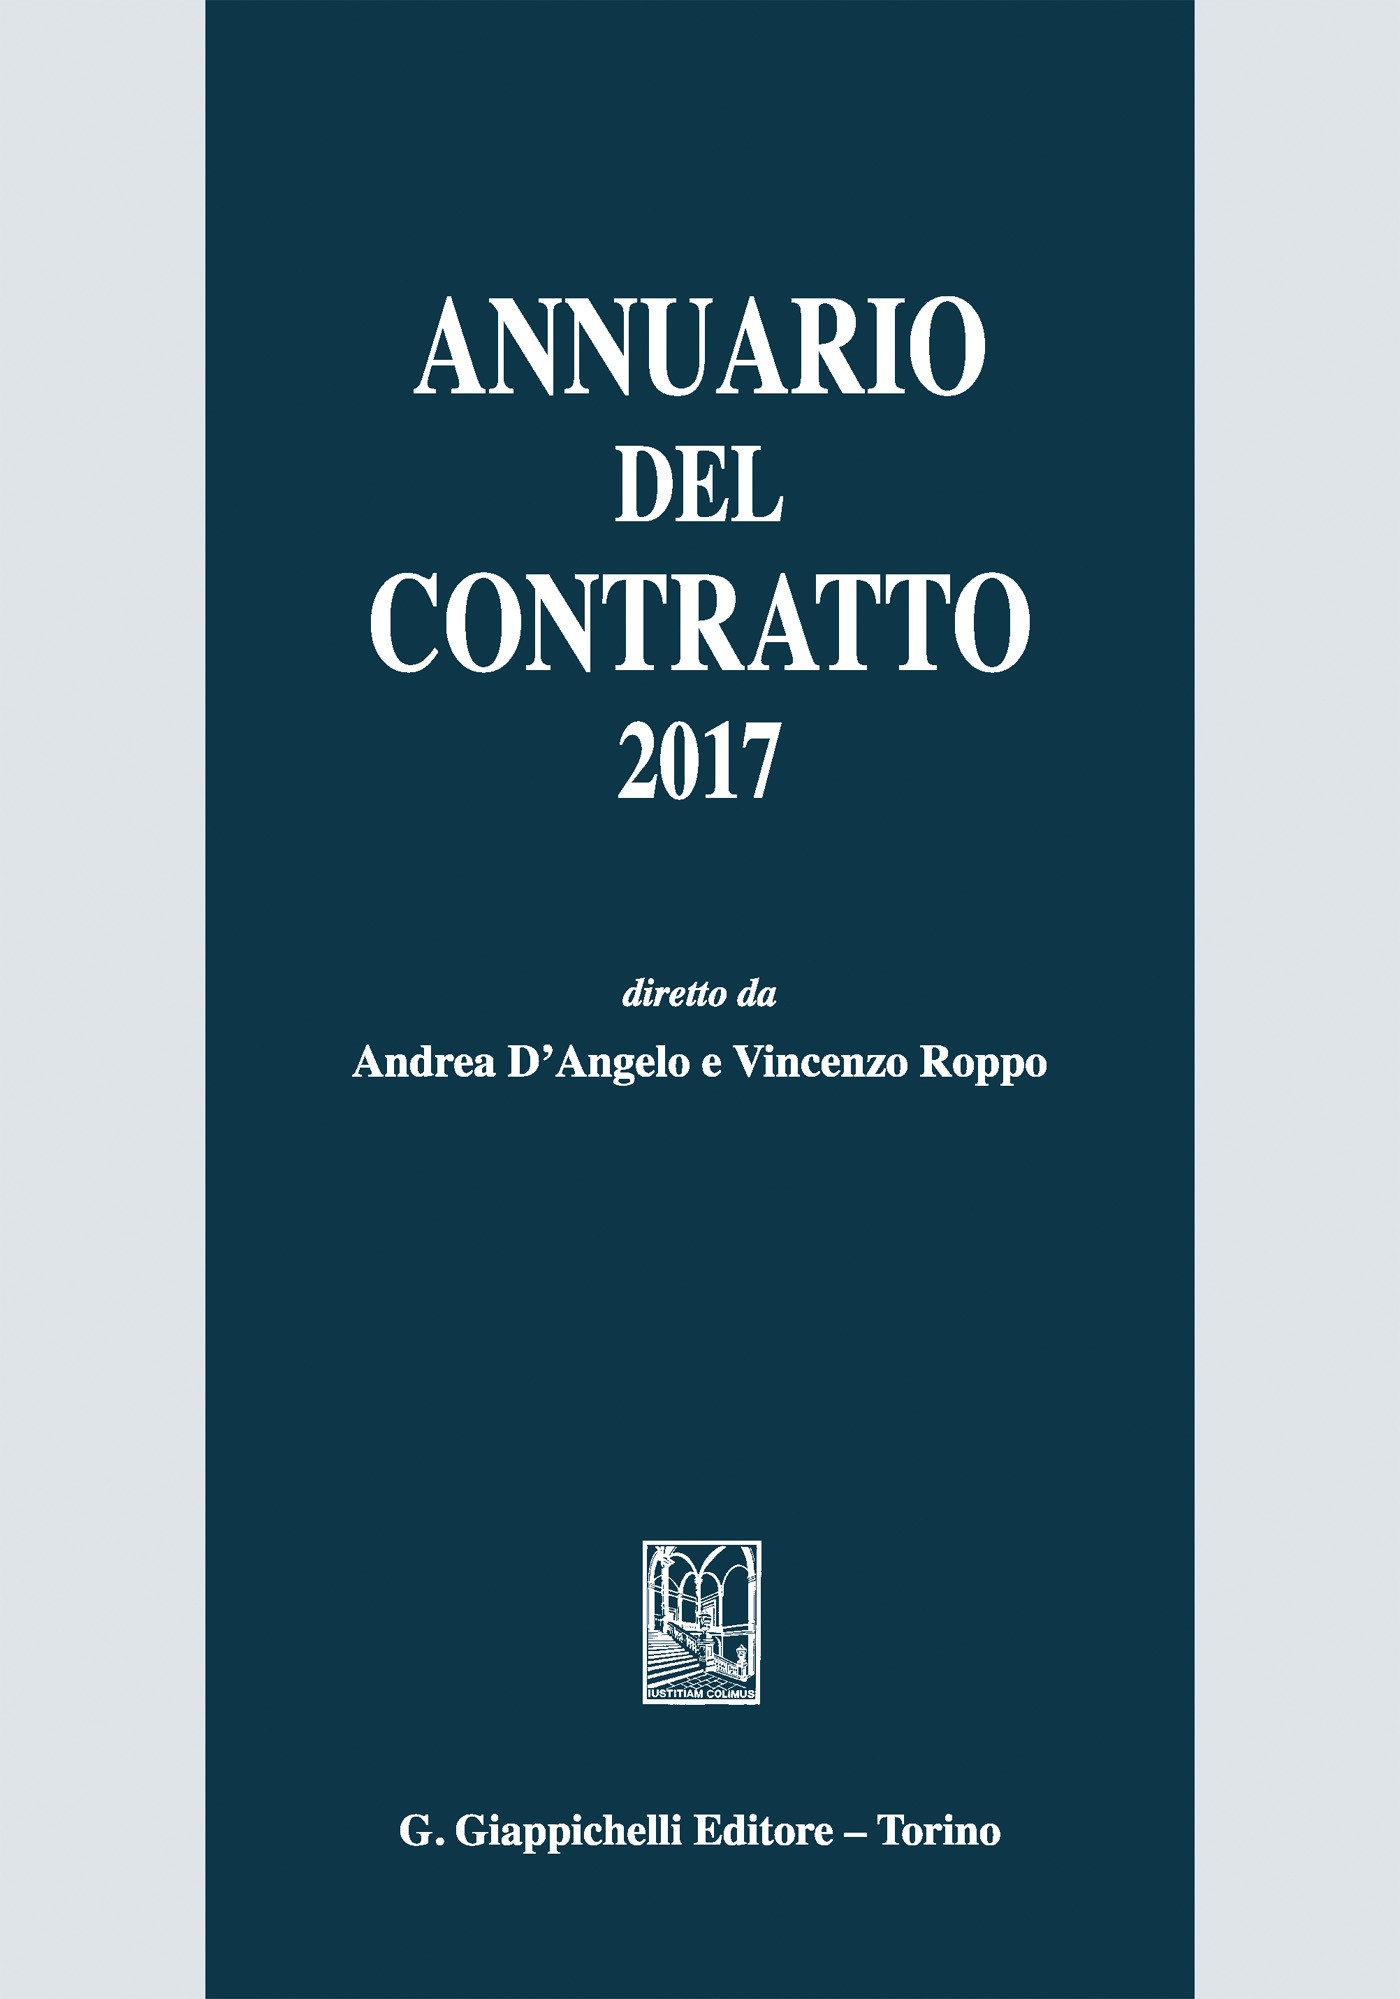 Annuario del contratto 2017 - Librerie.coop